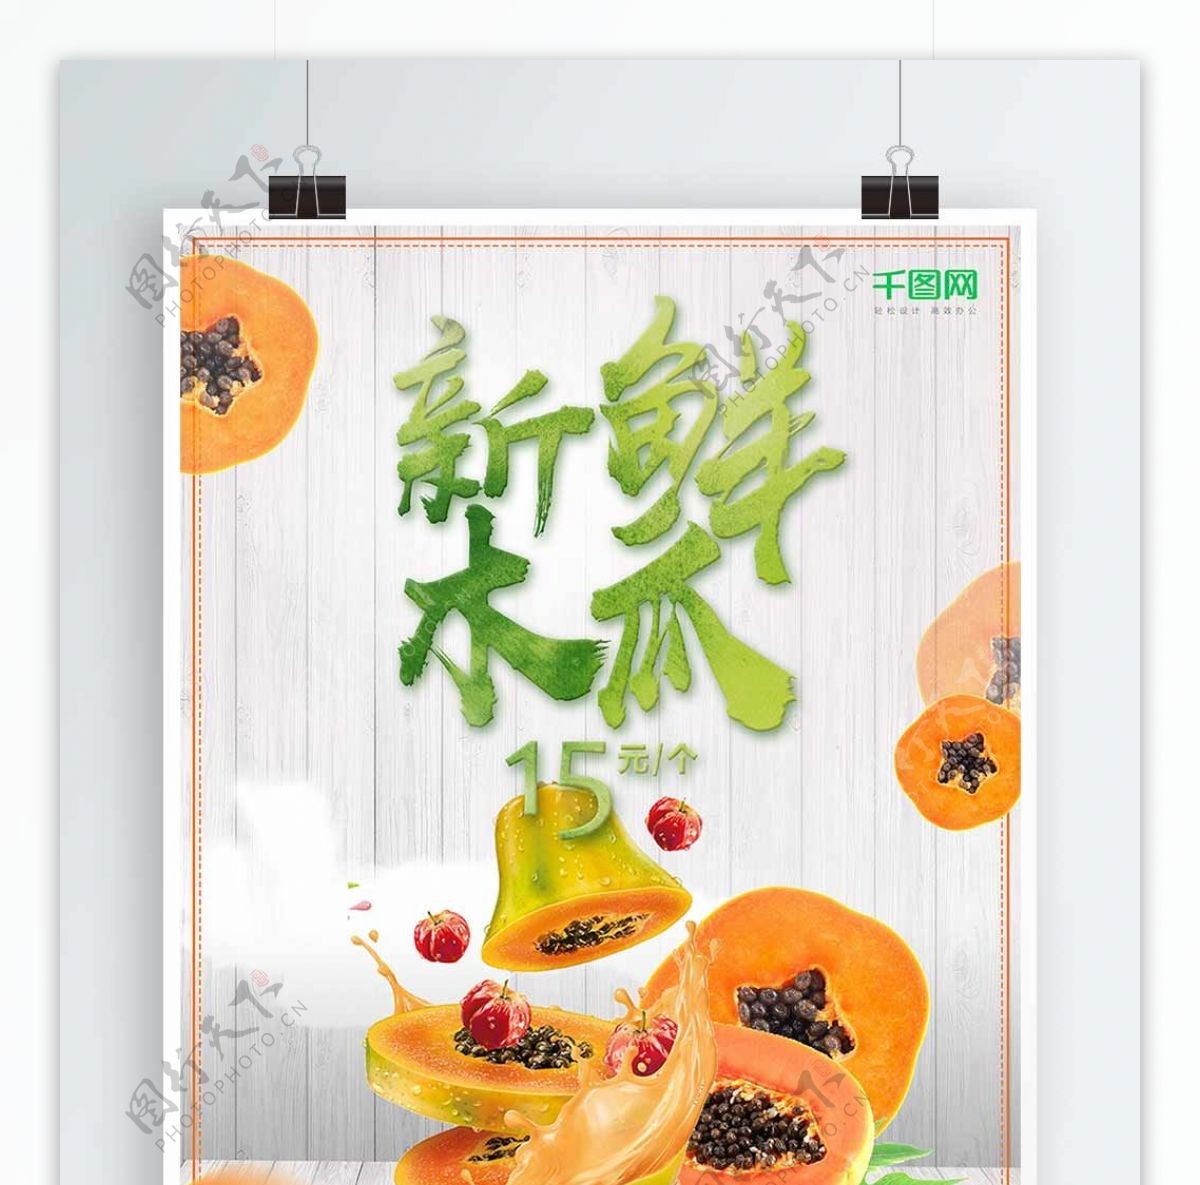 新鲜美味木瓜水果海报设计